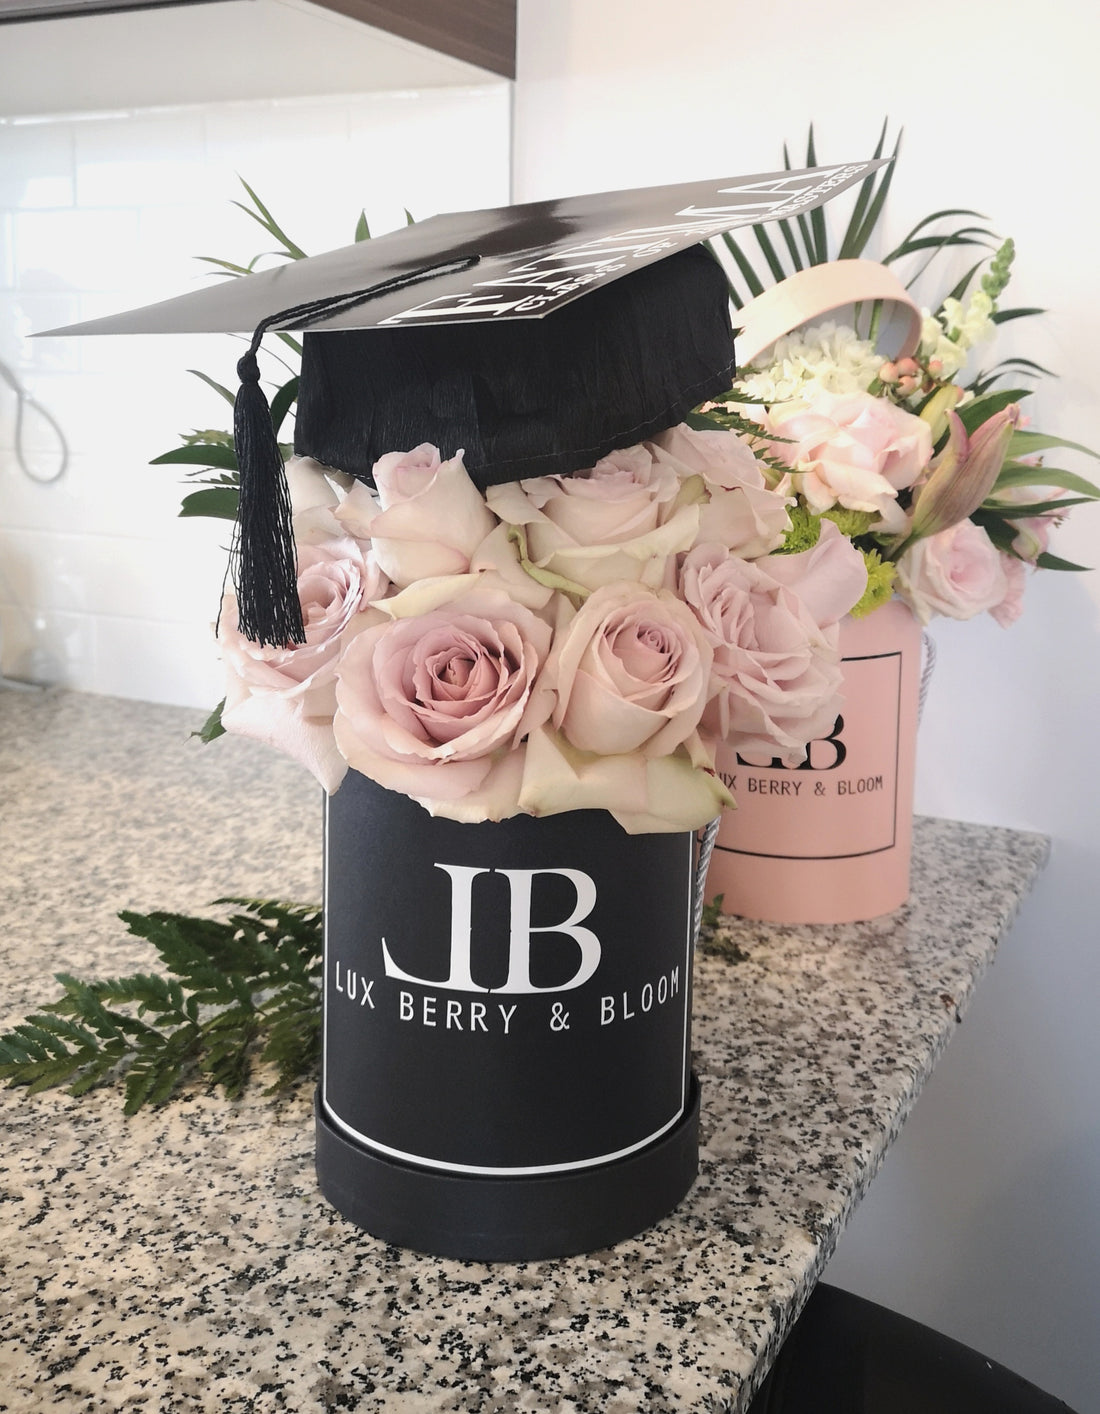 Personalized Graduation Flower Arrangement